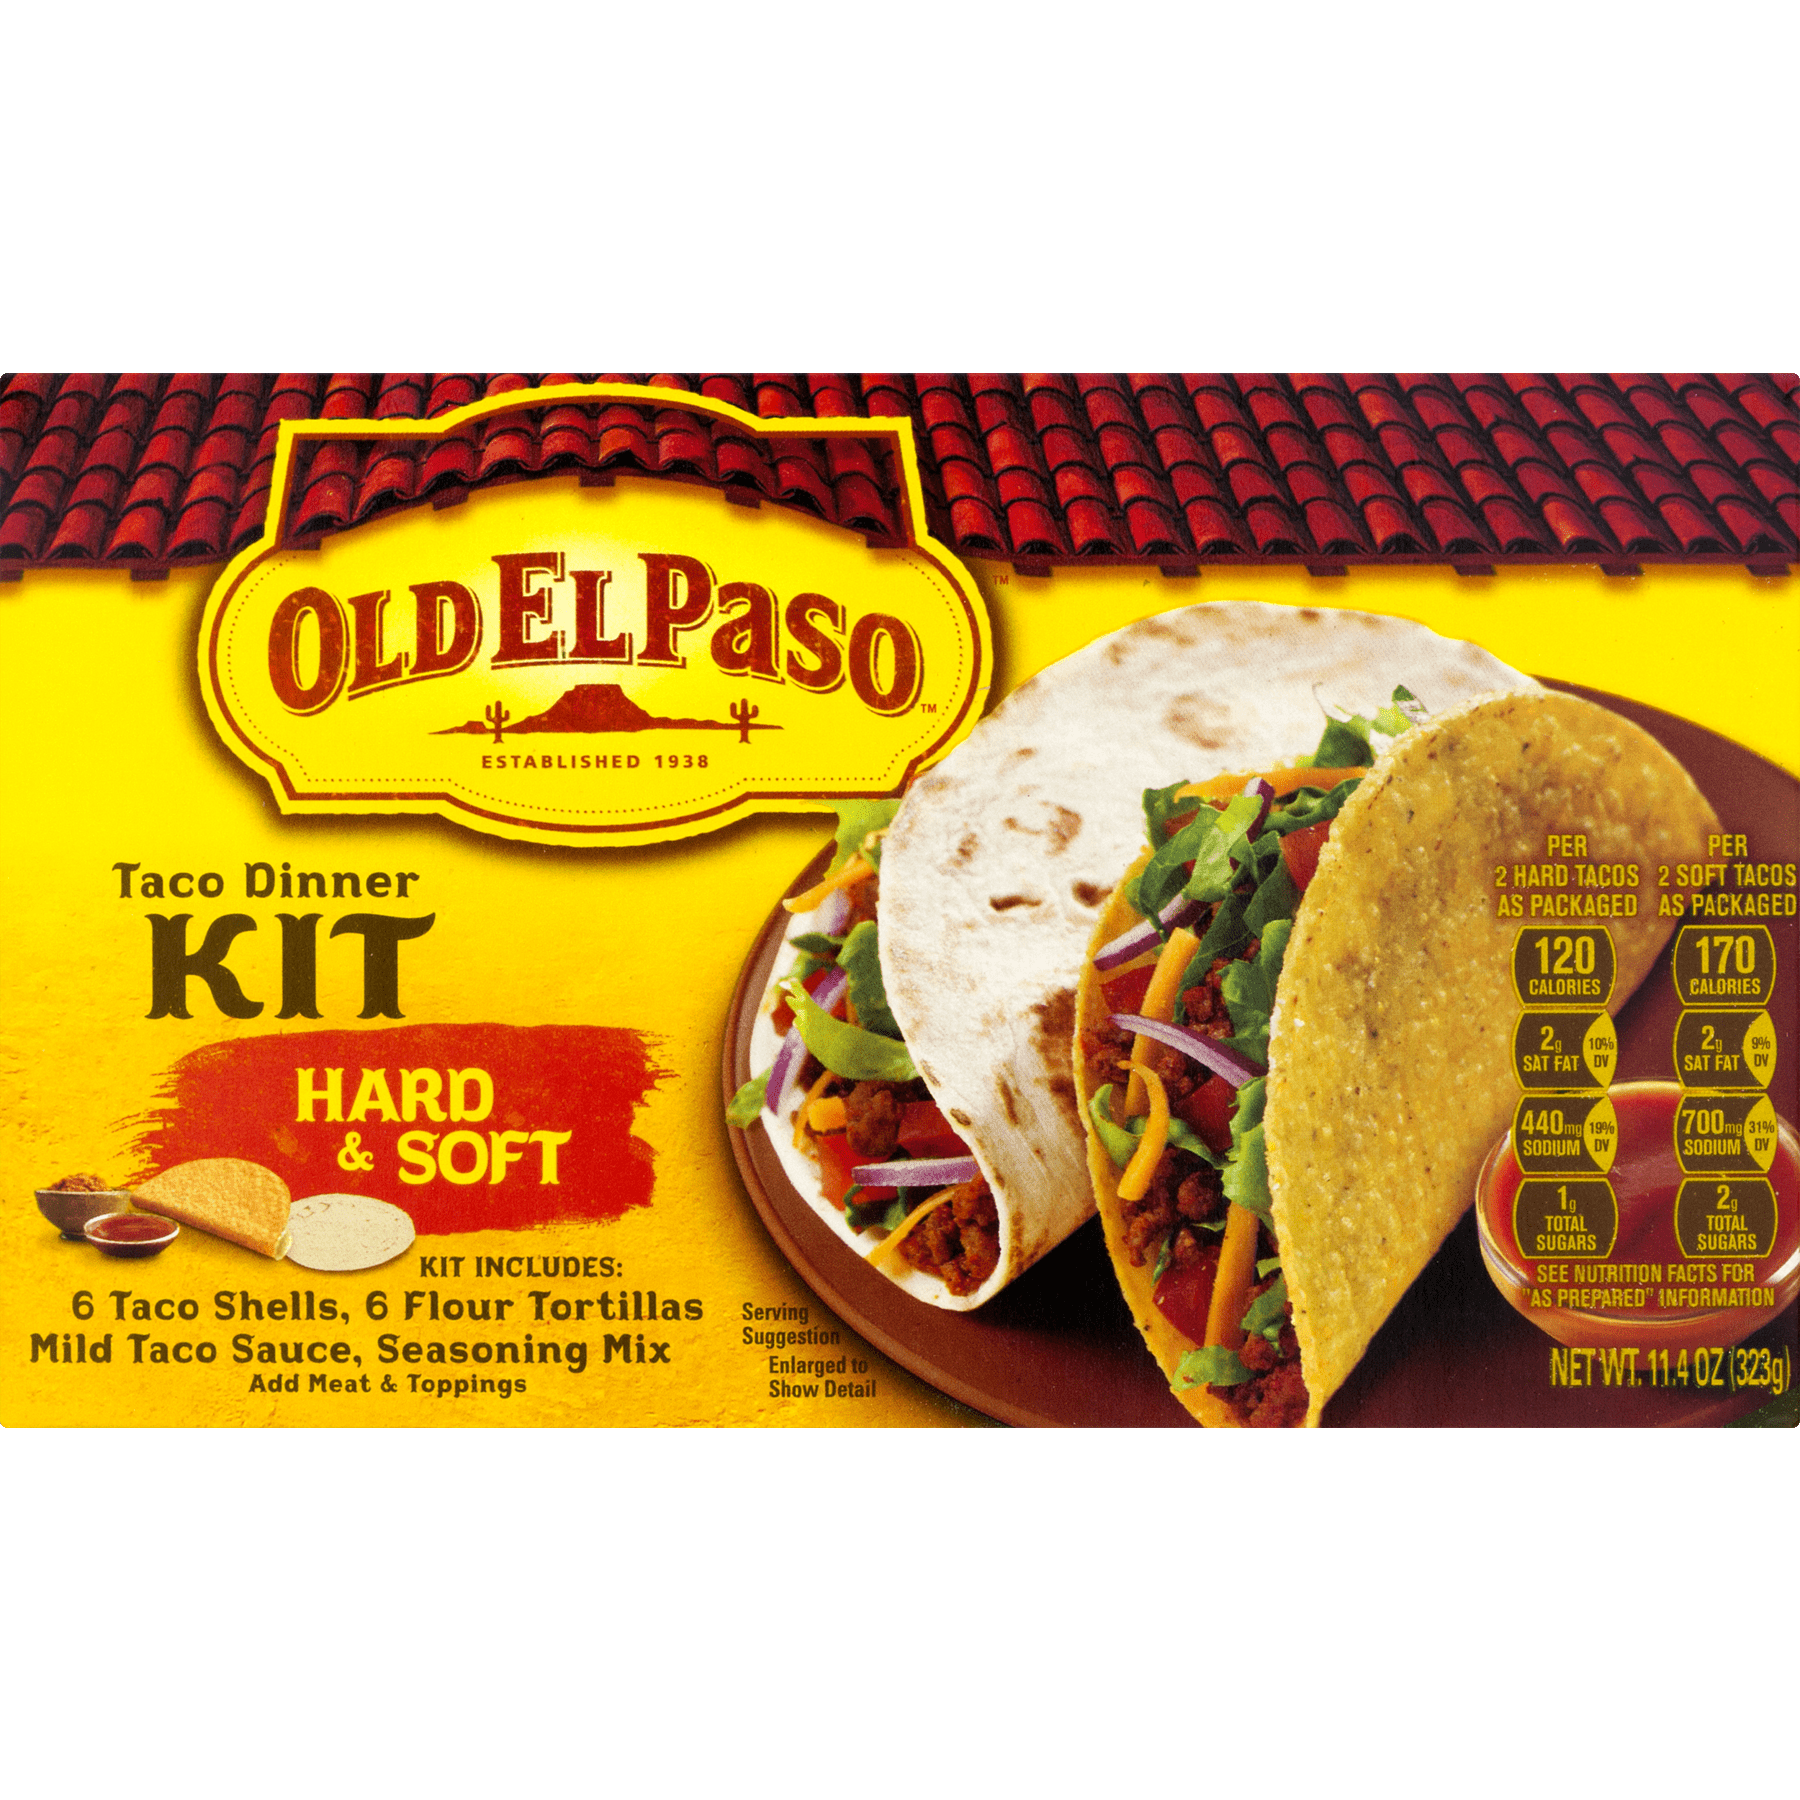 4 Pack Old El Pasoa A A Hard Soft Taco Dinner Kit 11 4 Oz Box Walmart Com Walmart Com